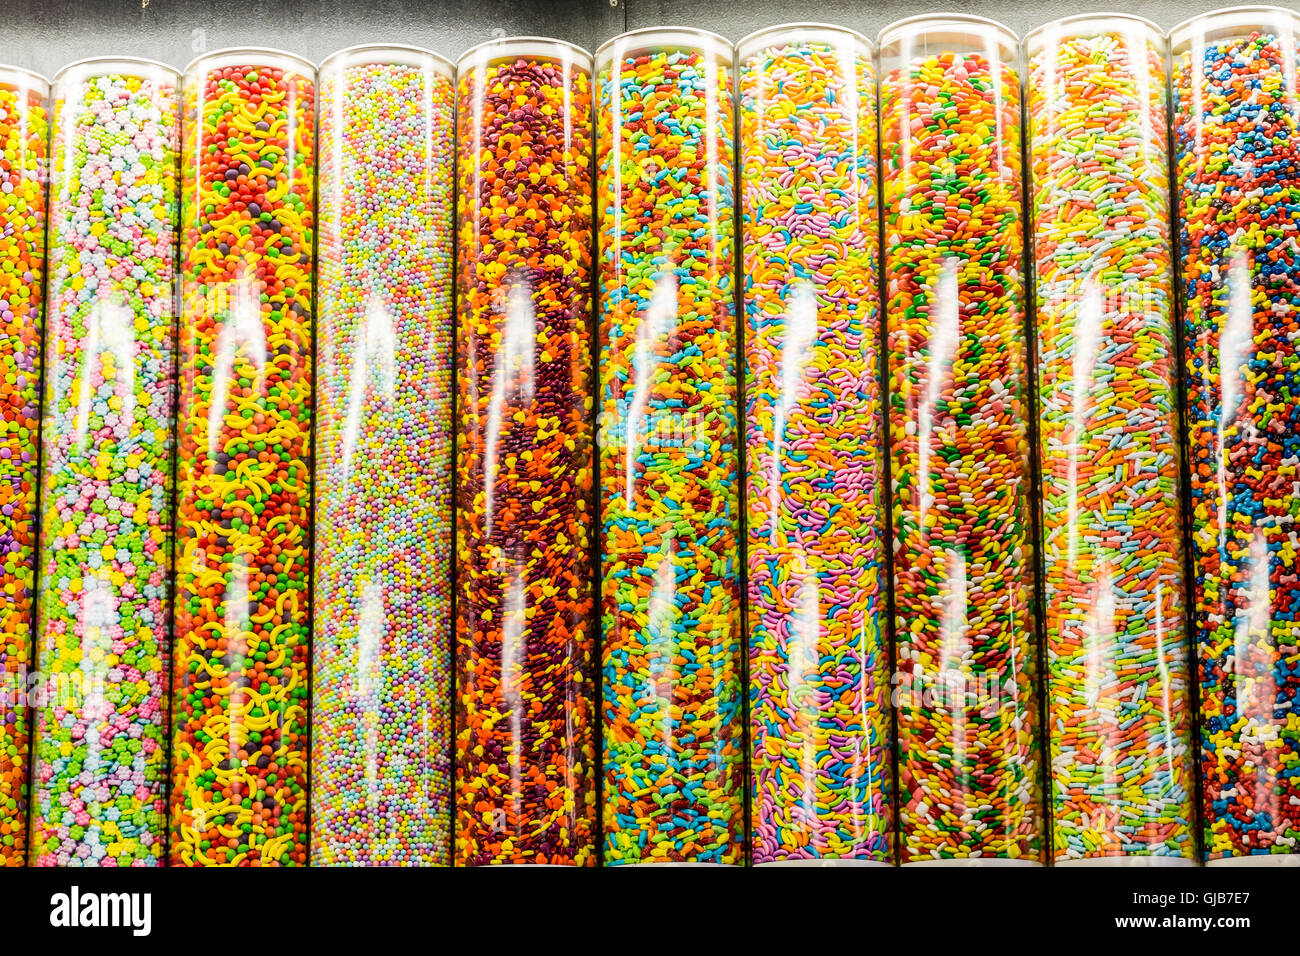 Bonbons colorés dans des tubes de verre en magasin de bonbons Banque D'Images